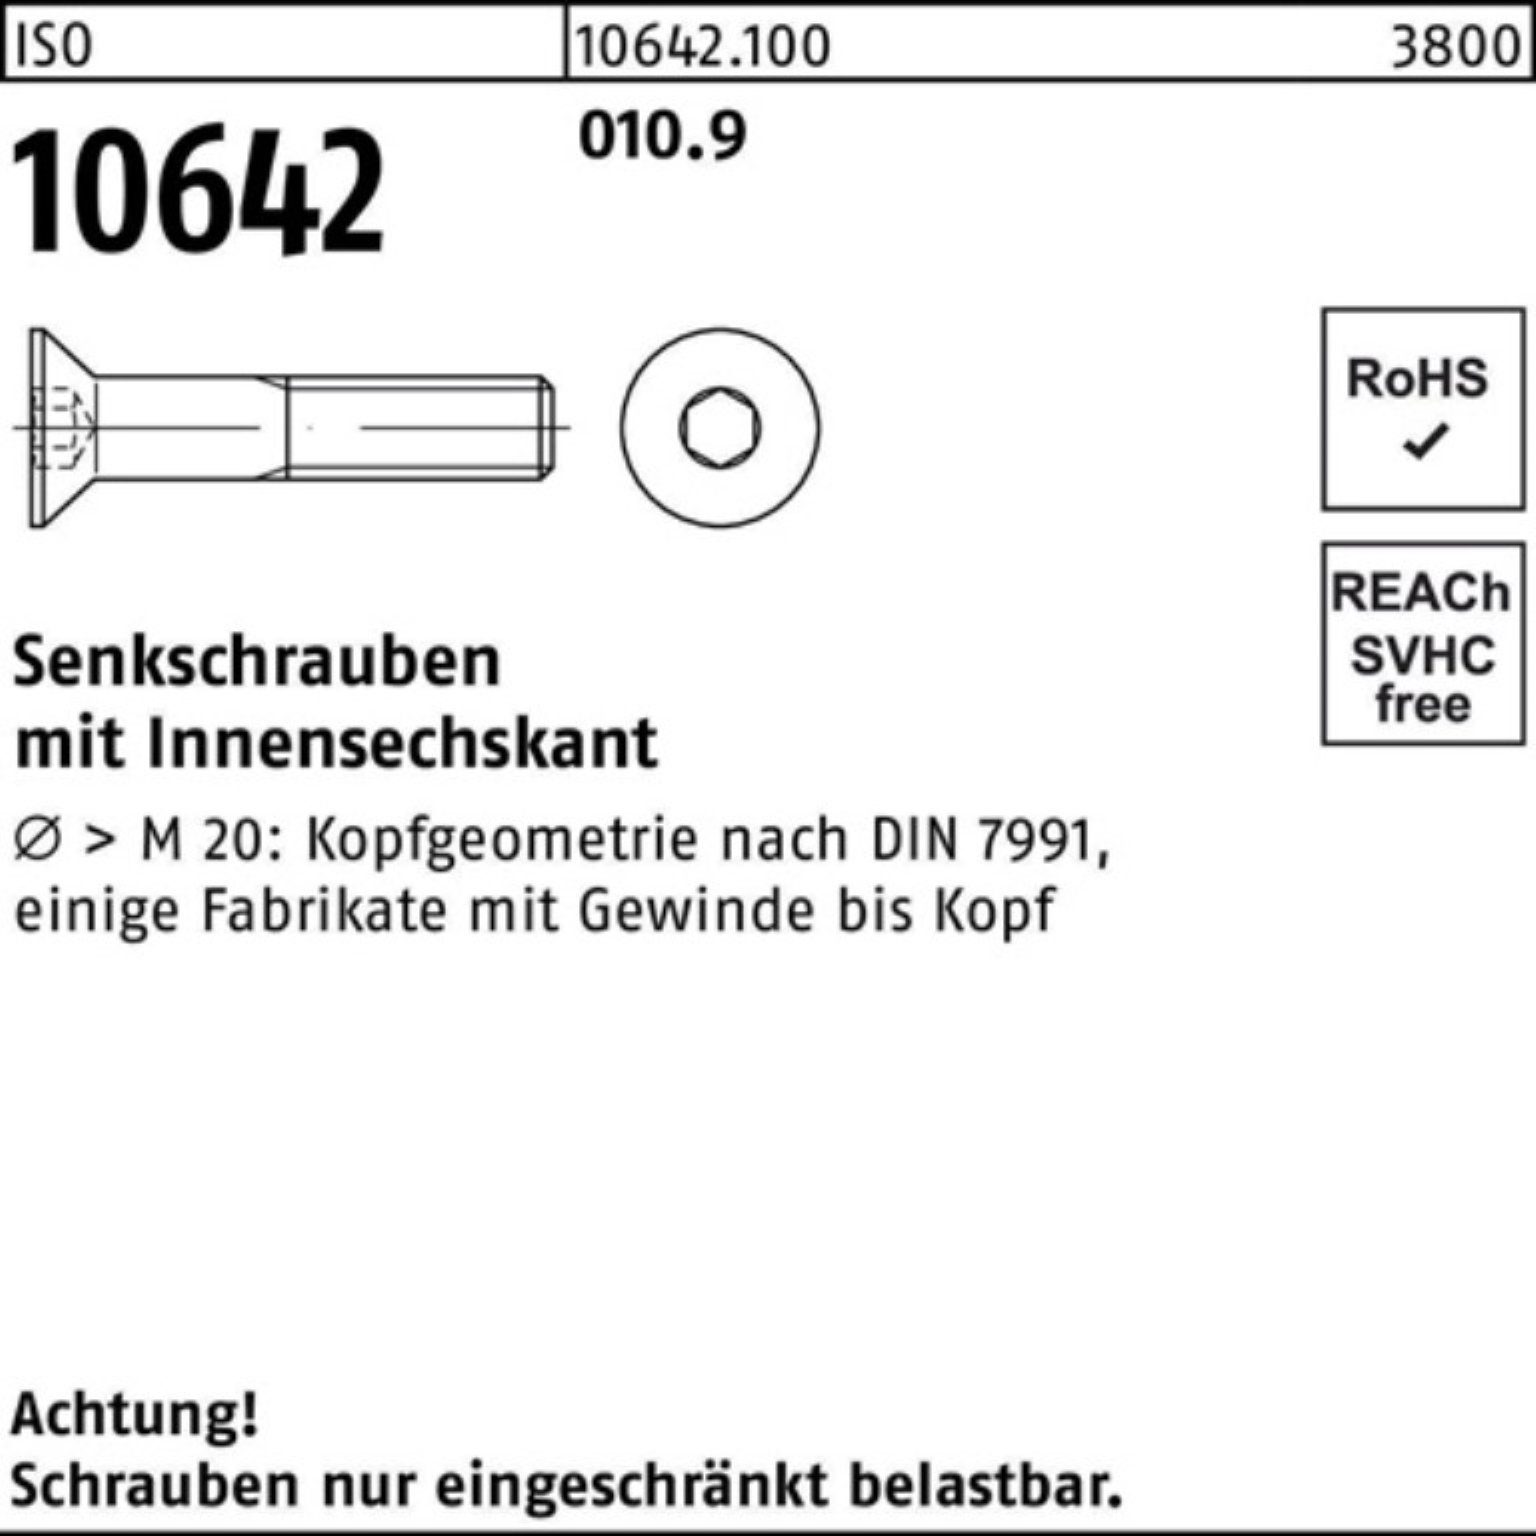 10642 IS Reyher Senkschraube Senkschraube Pack Innen-6kt 70 M6x Stück 010.9 200er ISO 200